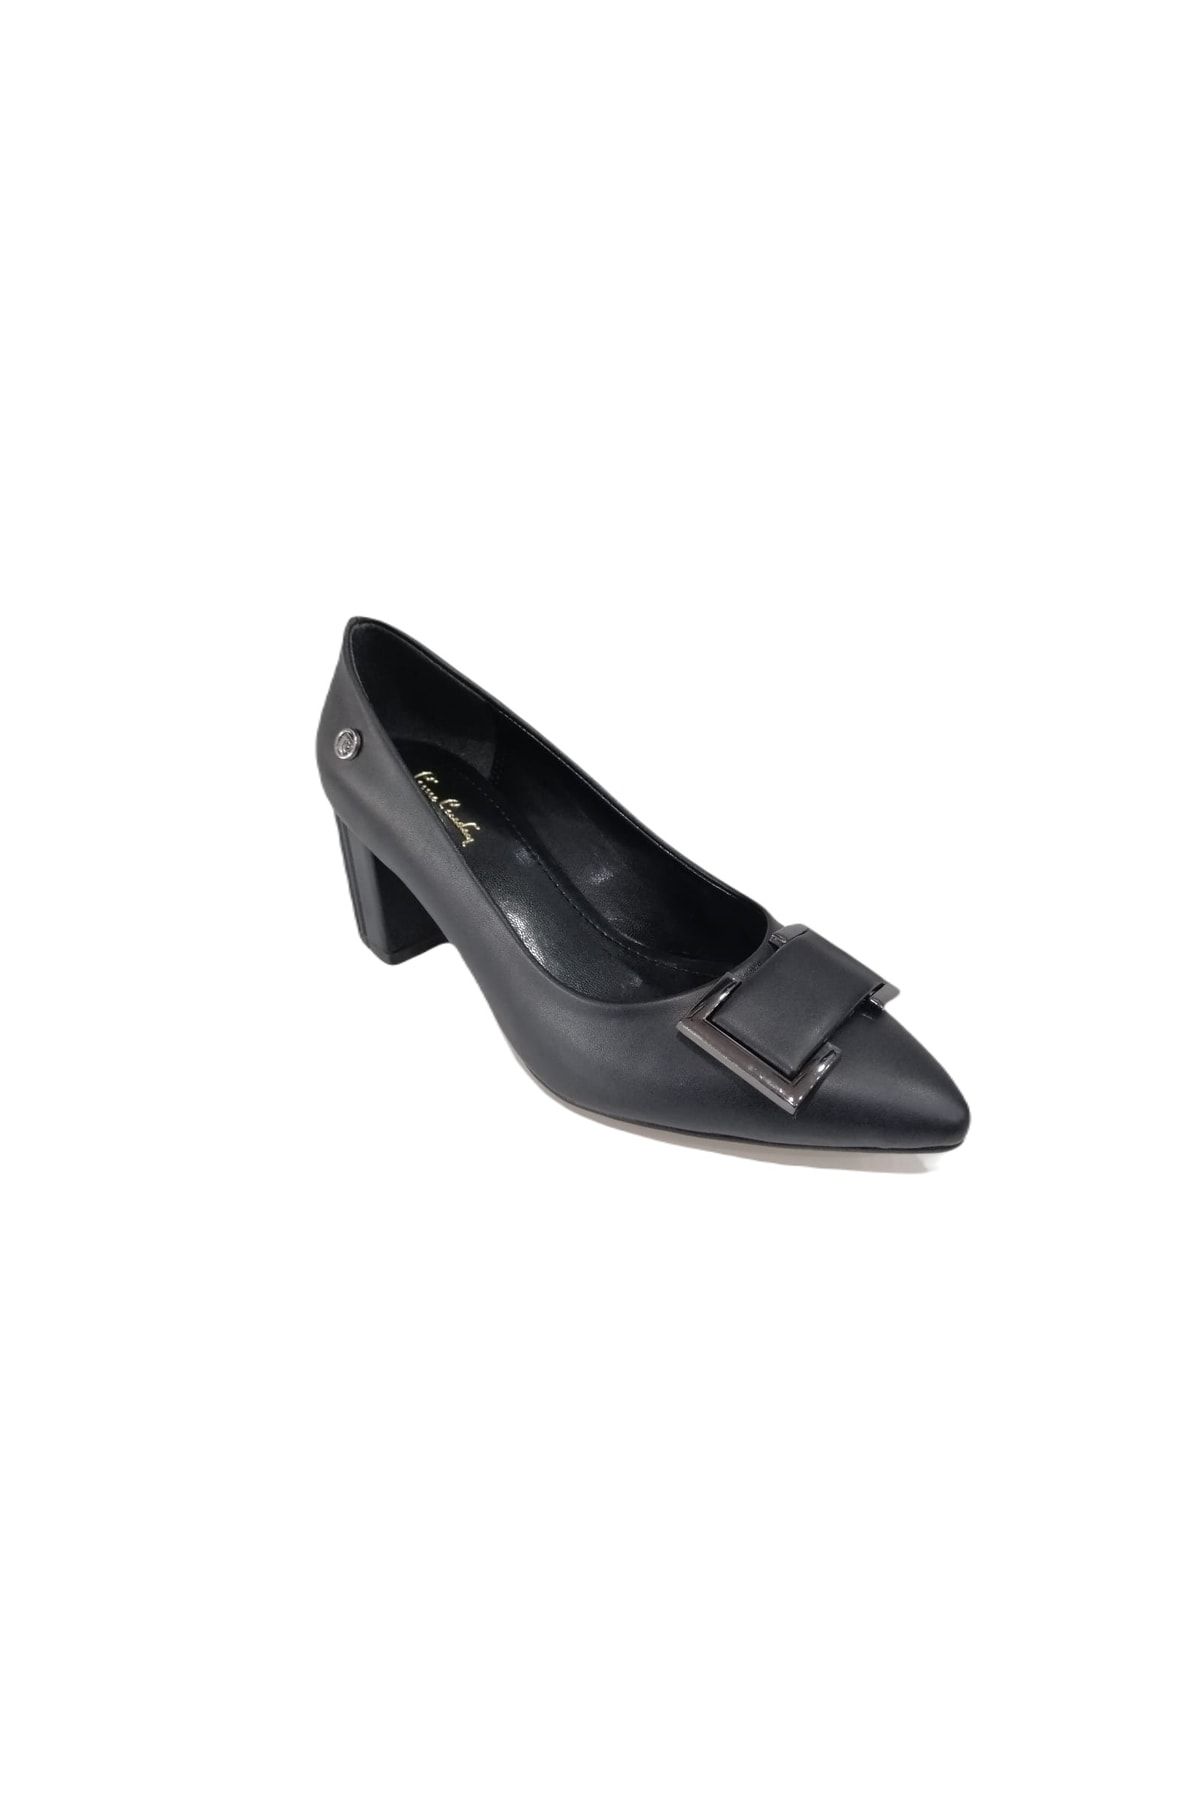 Pierre Cardin 51760 Siyah Kırışık Kadın Topuklu Abiye Ayakkabı